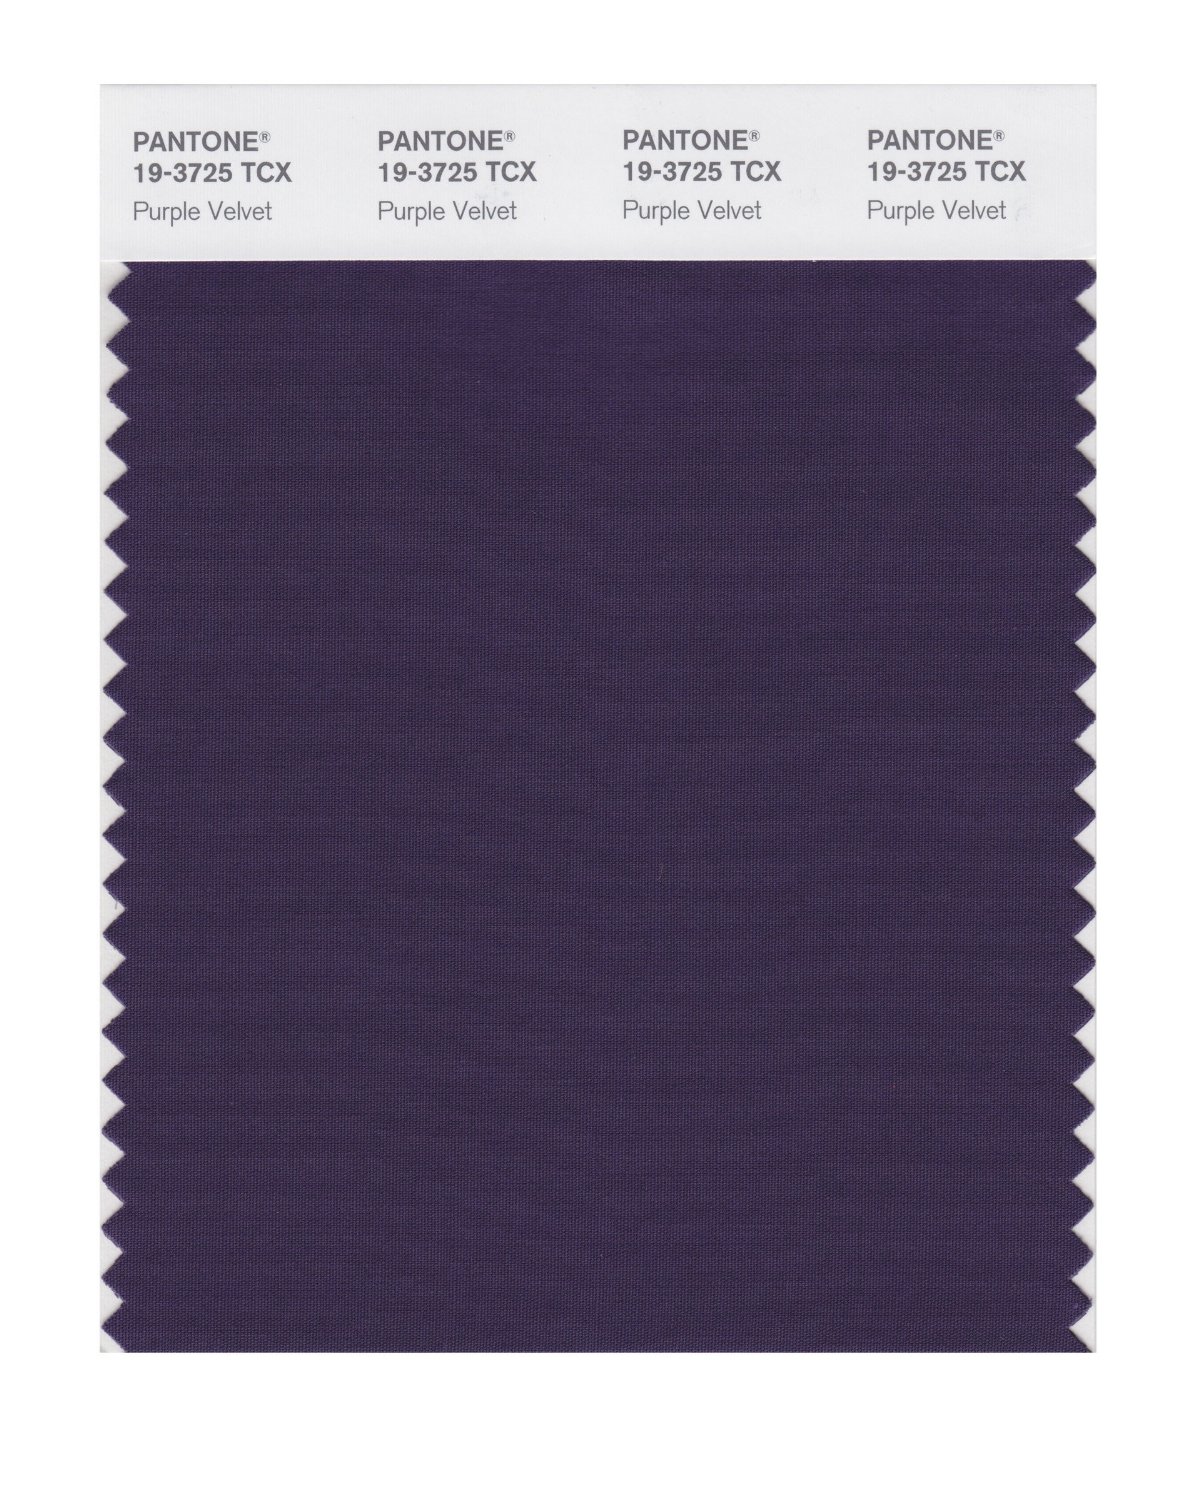 Pantone Cotton Swatch 19-3725 Purple Velvet